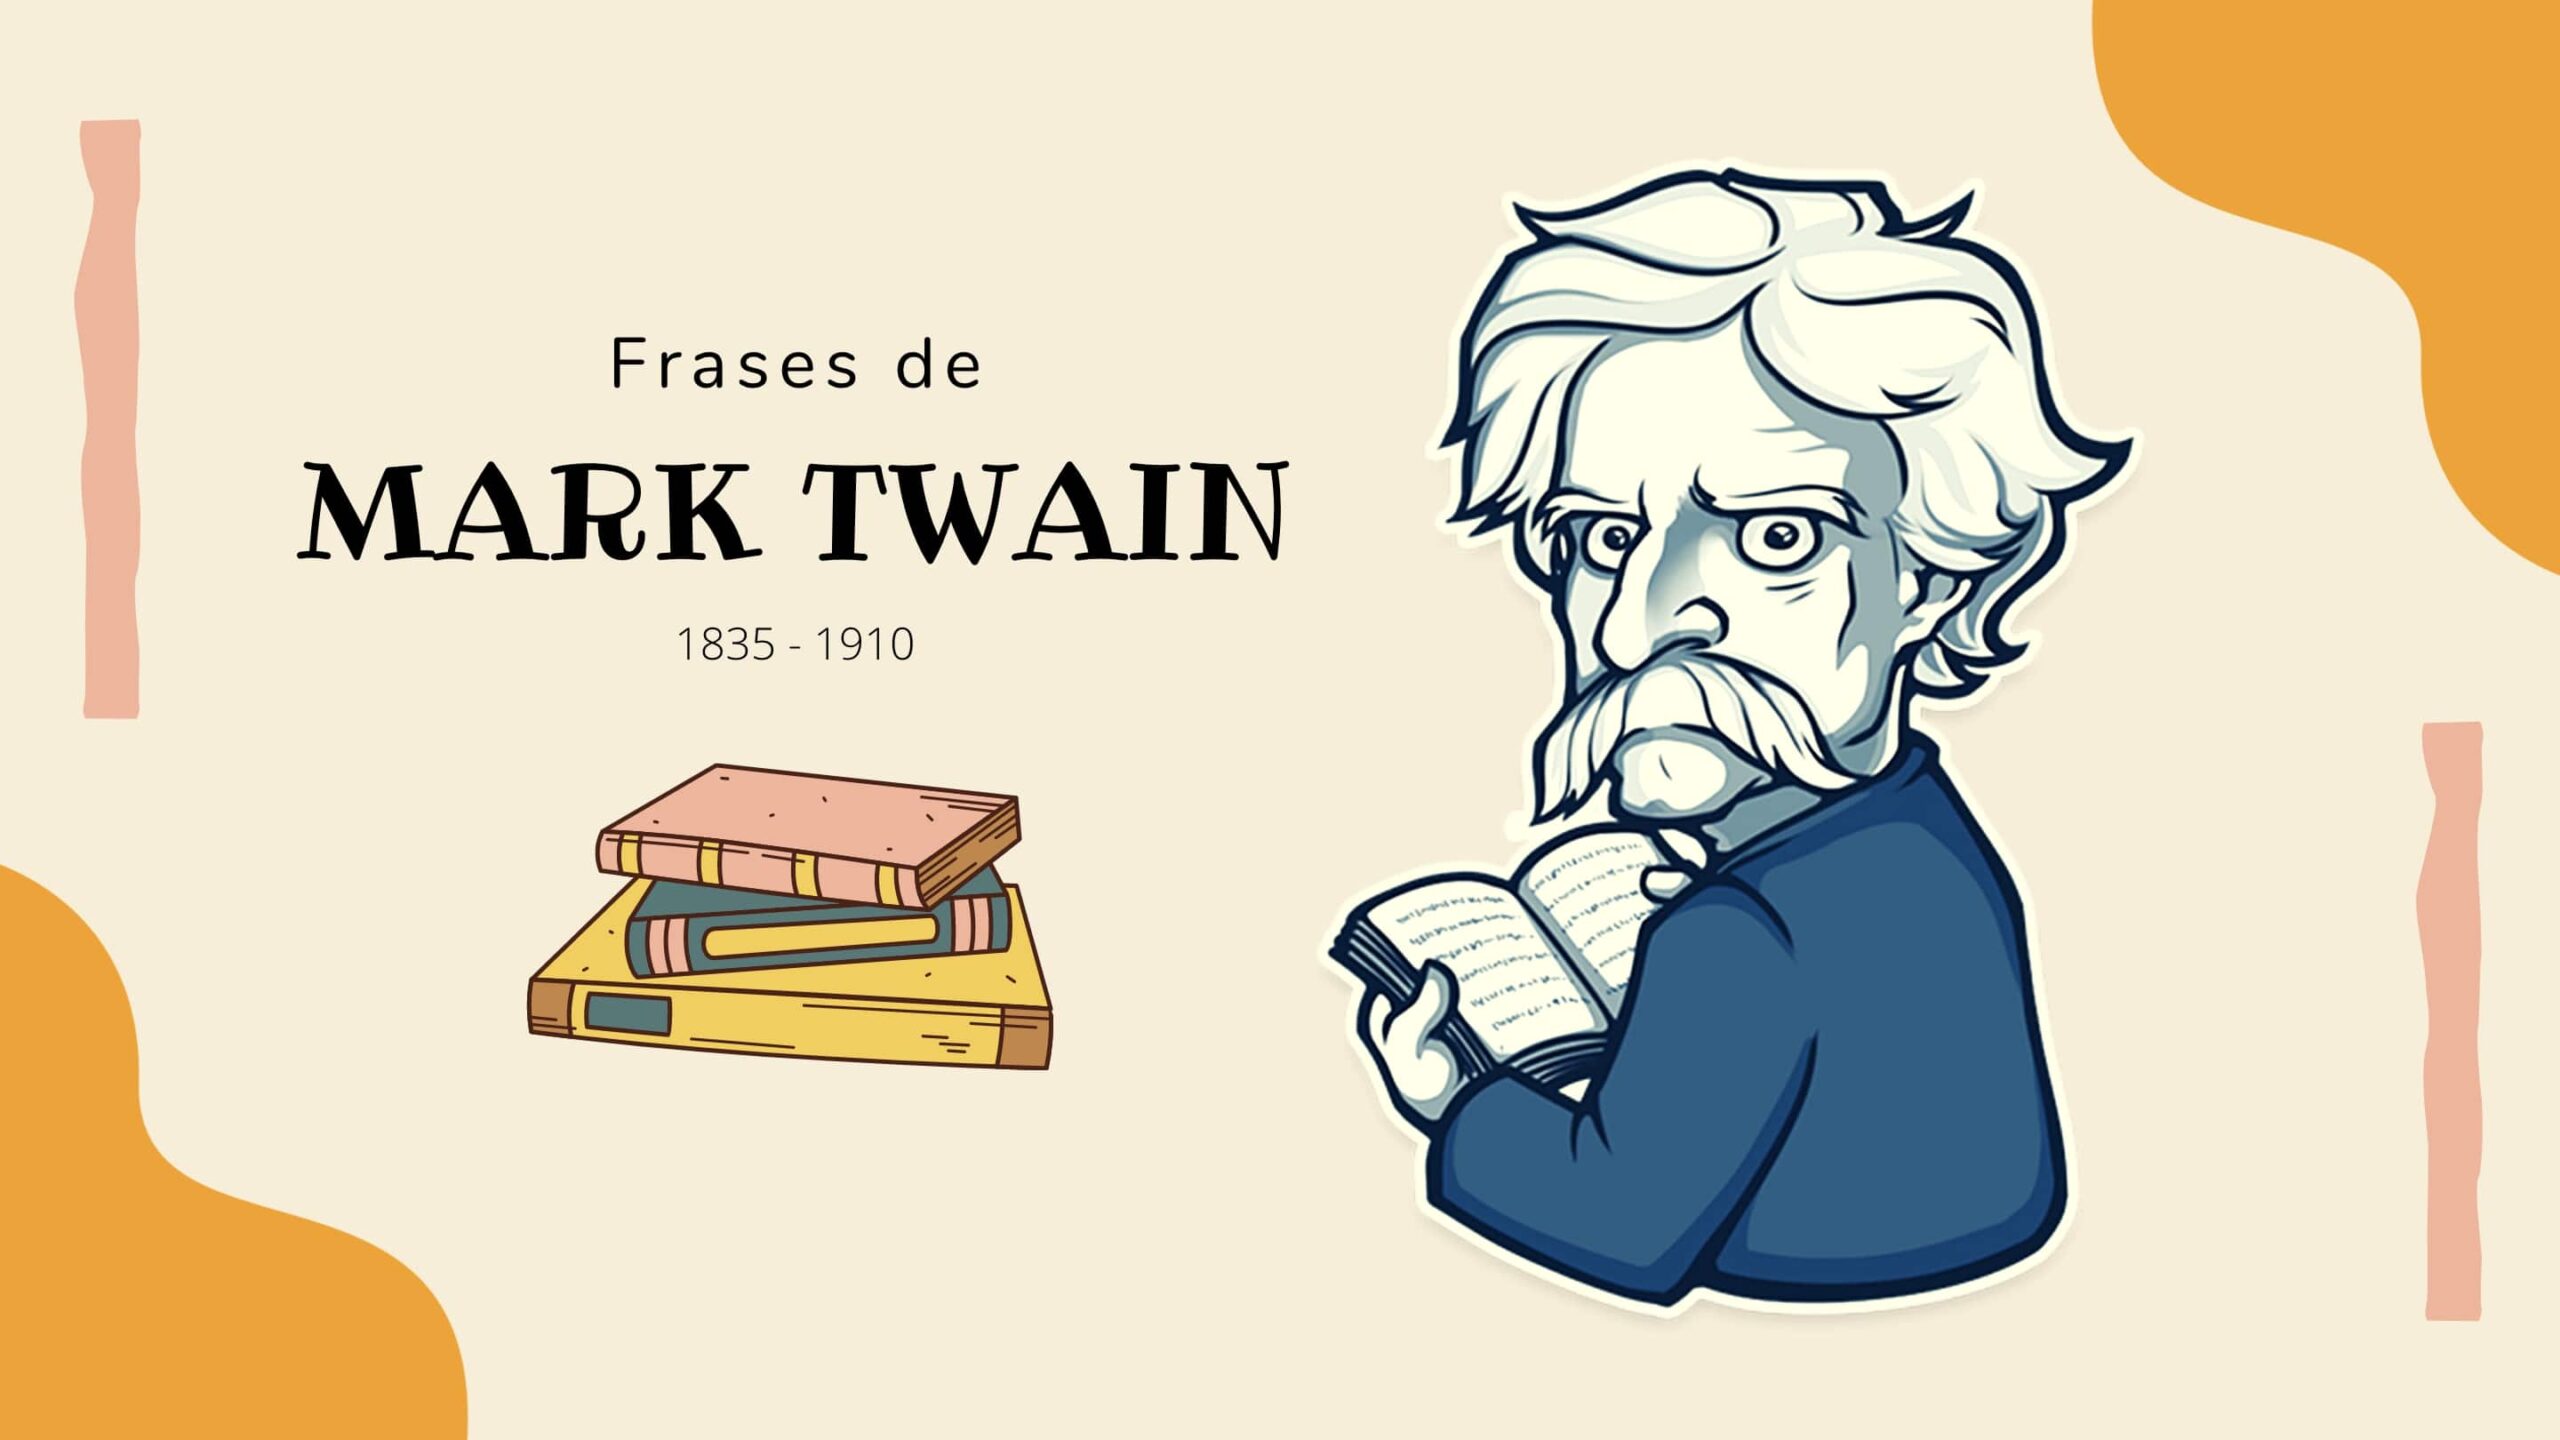 115 Frases de Mark Twain sobre la vida, el amor y más